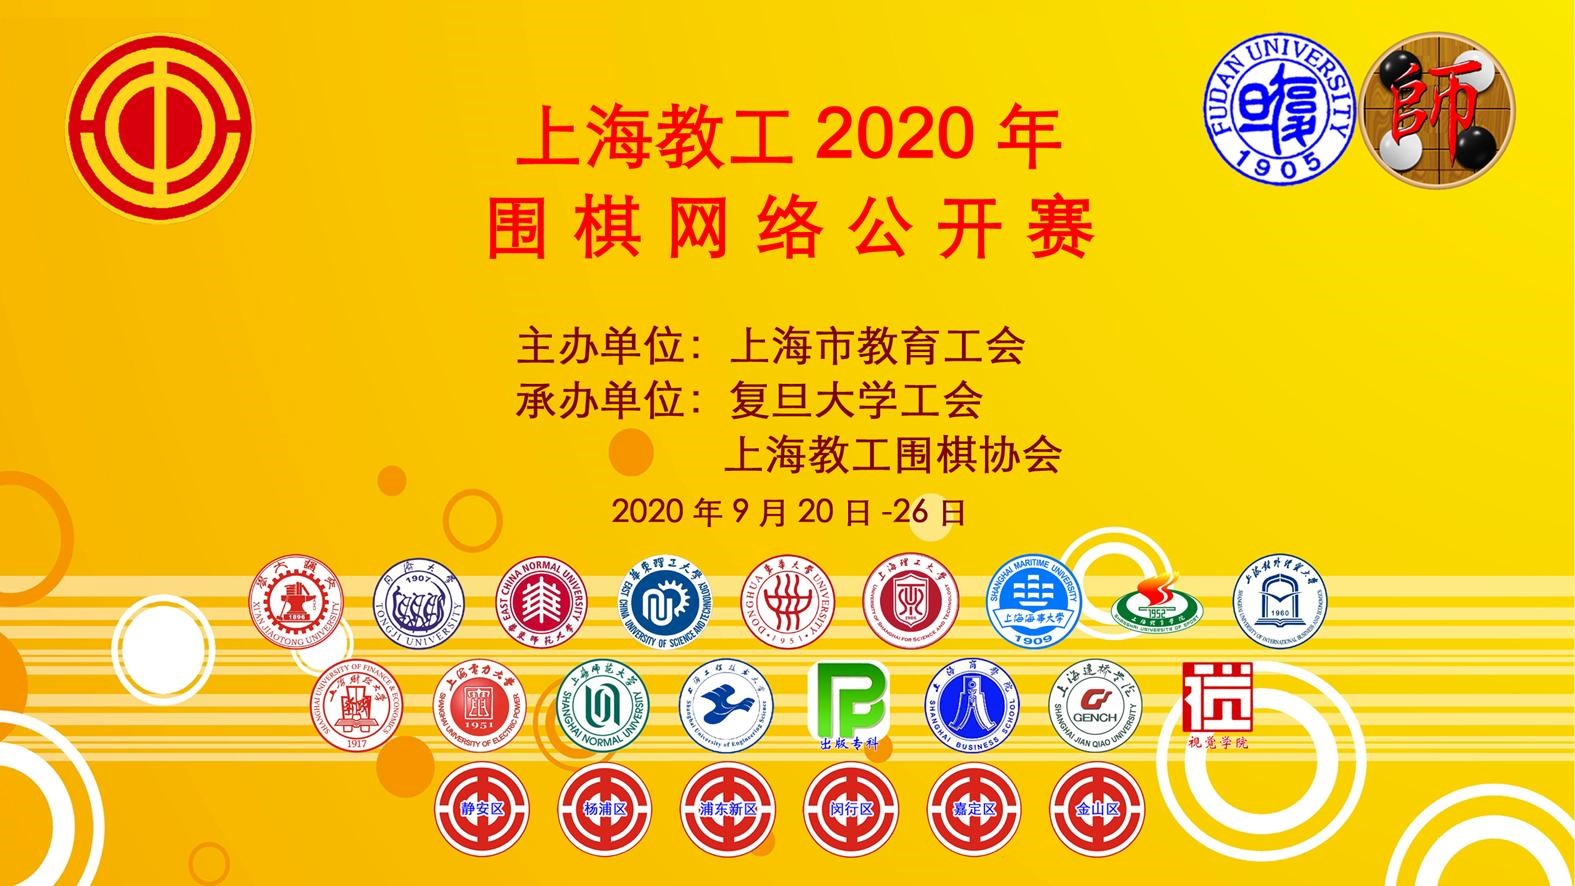 上海教工2020年围棋网络公开赛.jpg